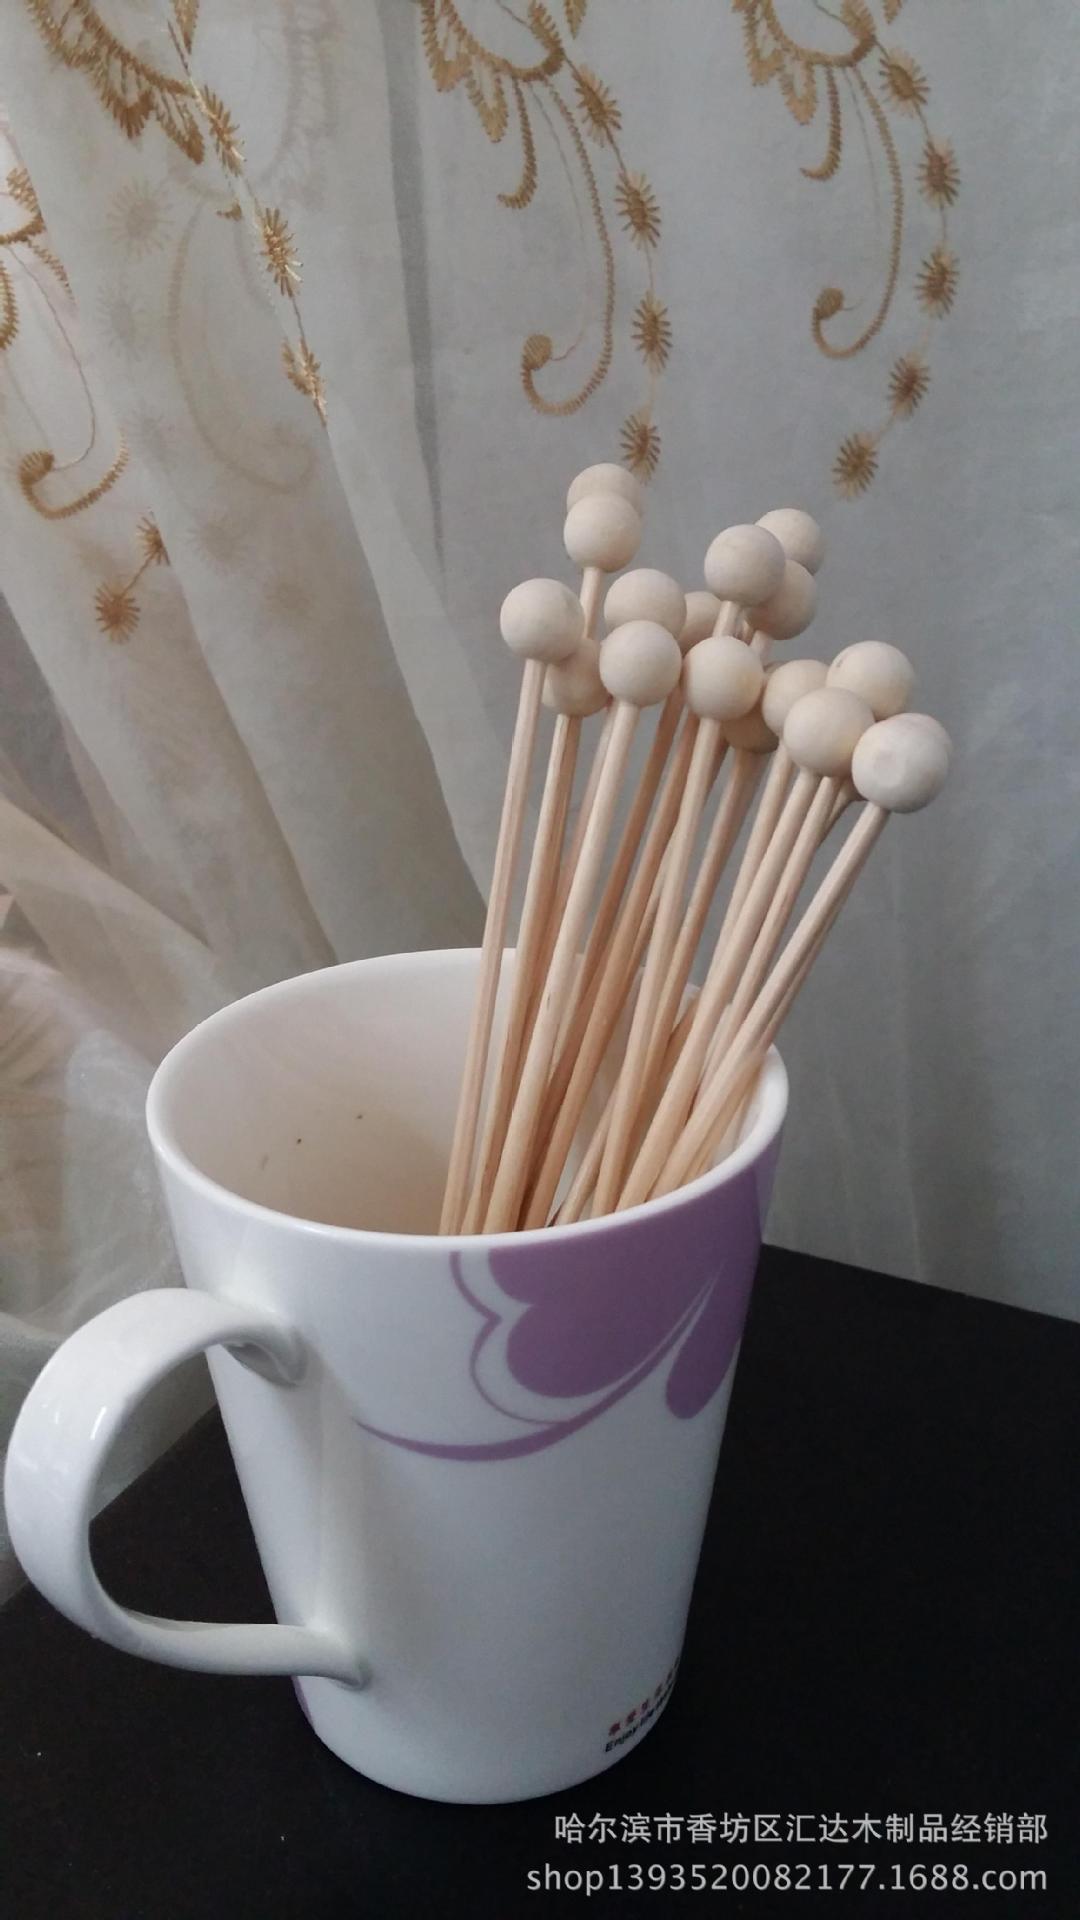 咖啡搅拌棒 一次性咖啡搅拌棒 木质咖啡搅拌棒 工艺咖啡搅拌棒